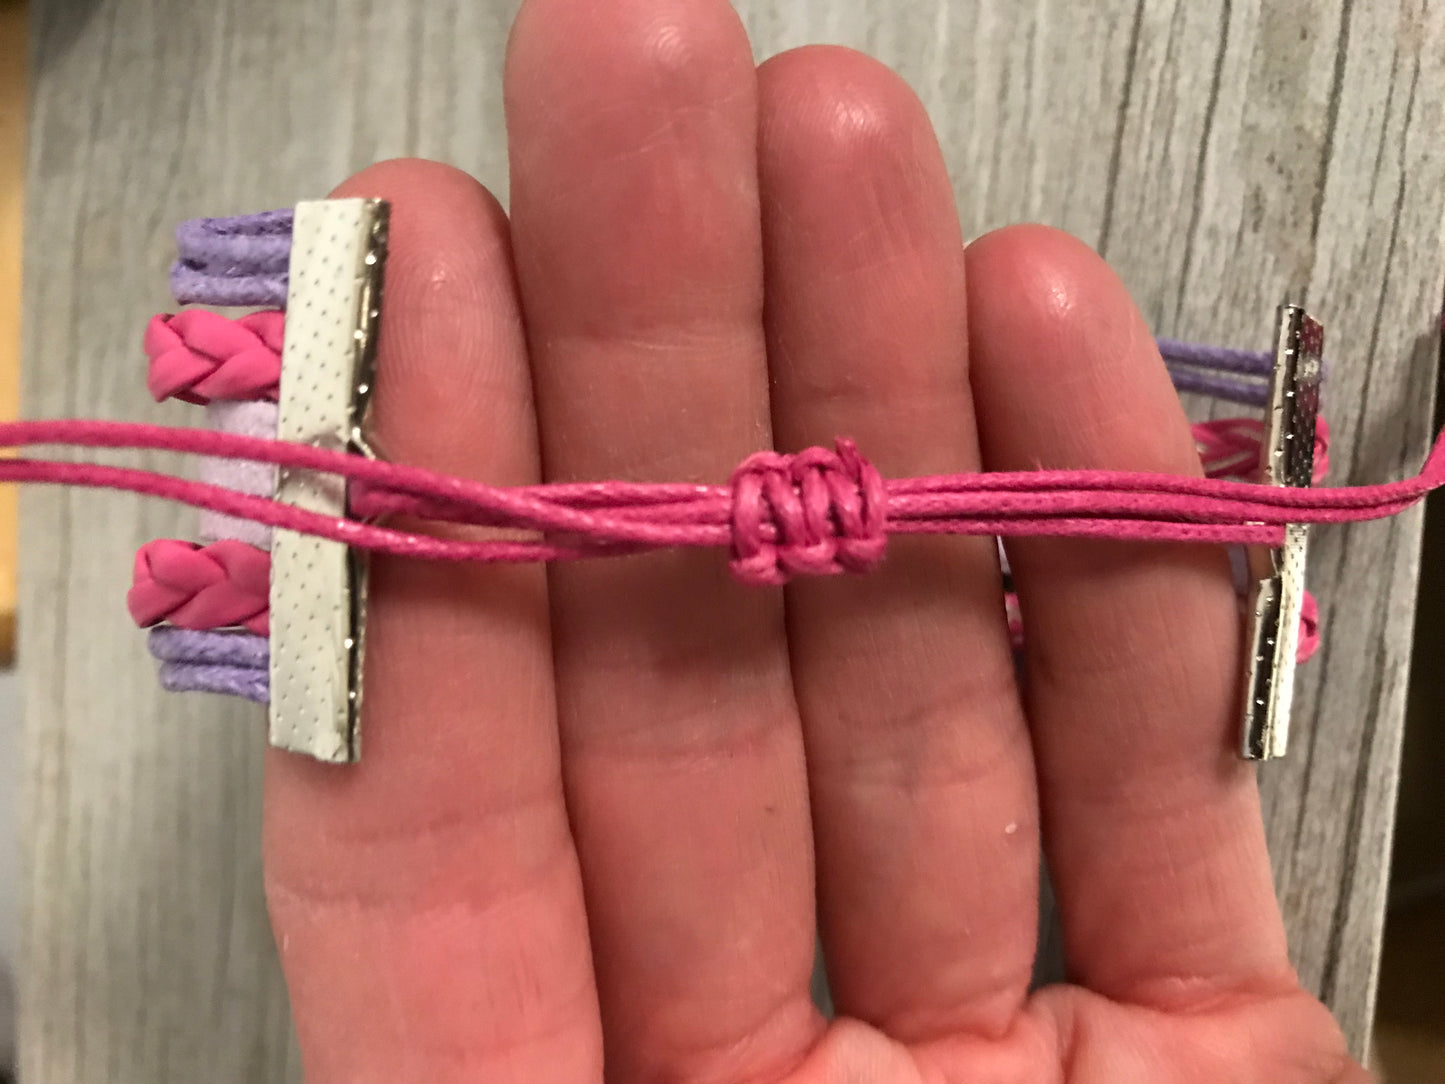 Horse Bracelet and Hair Ties Set- Pink